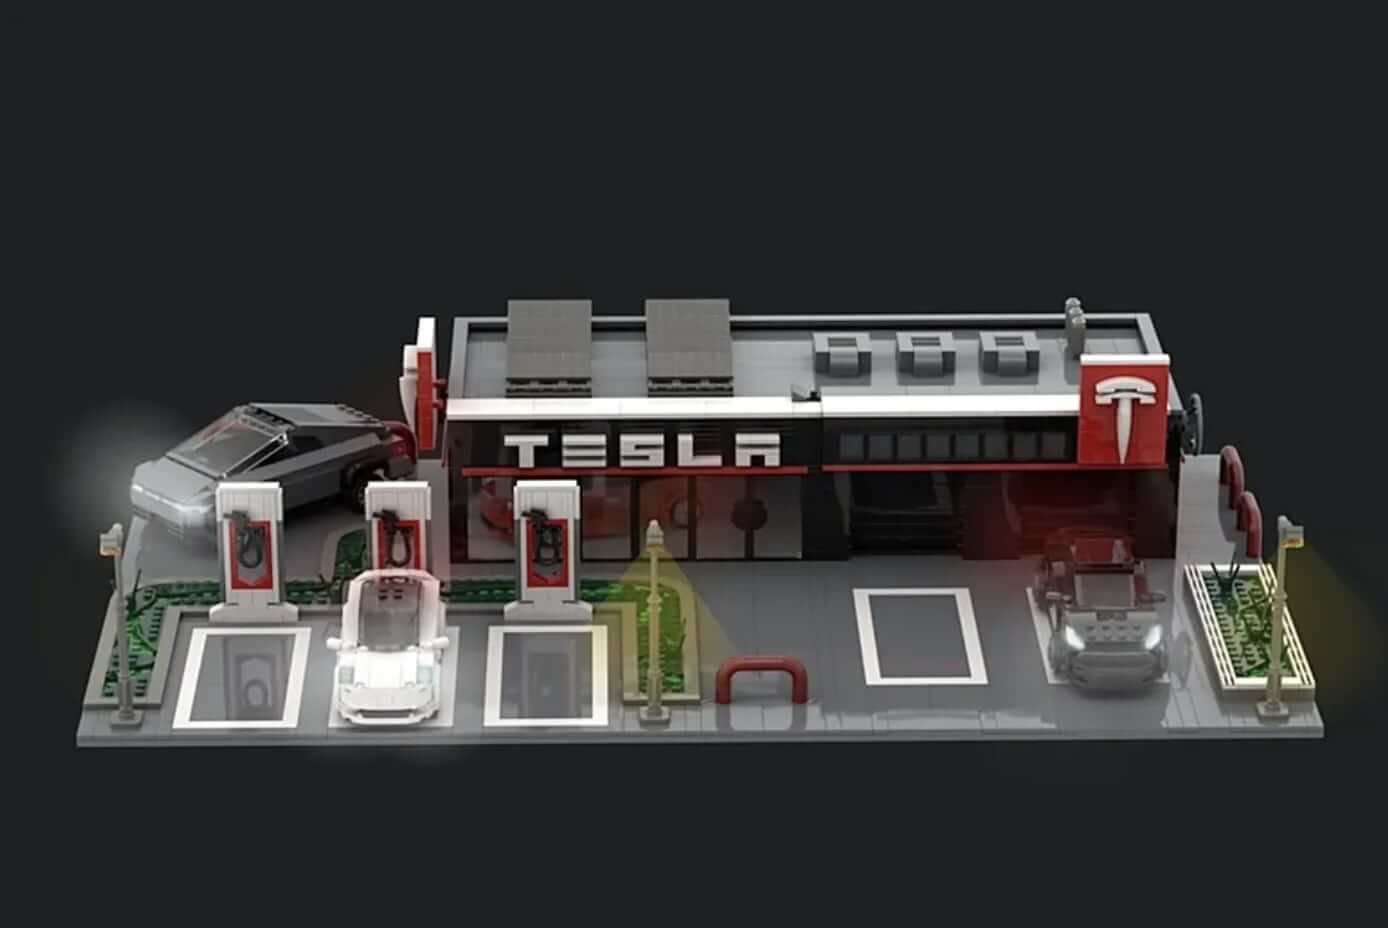 Tesla Supercharger получает Lego-fied в этом сумасшедшем проекте фанатской идеи